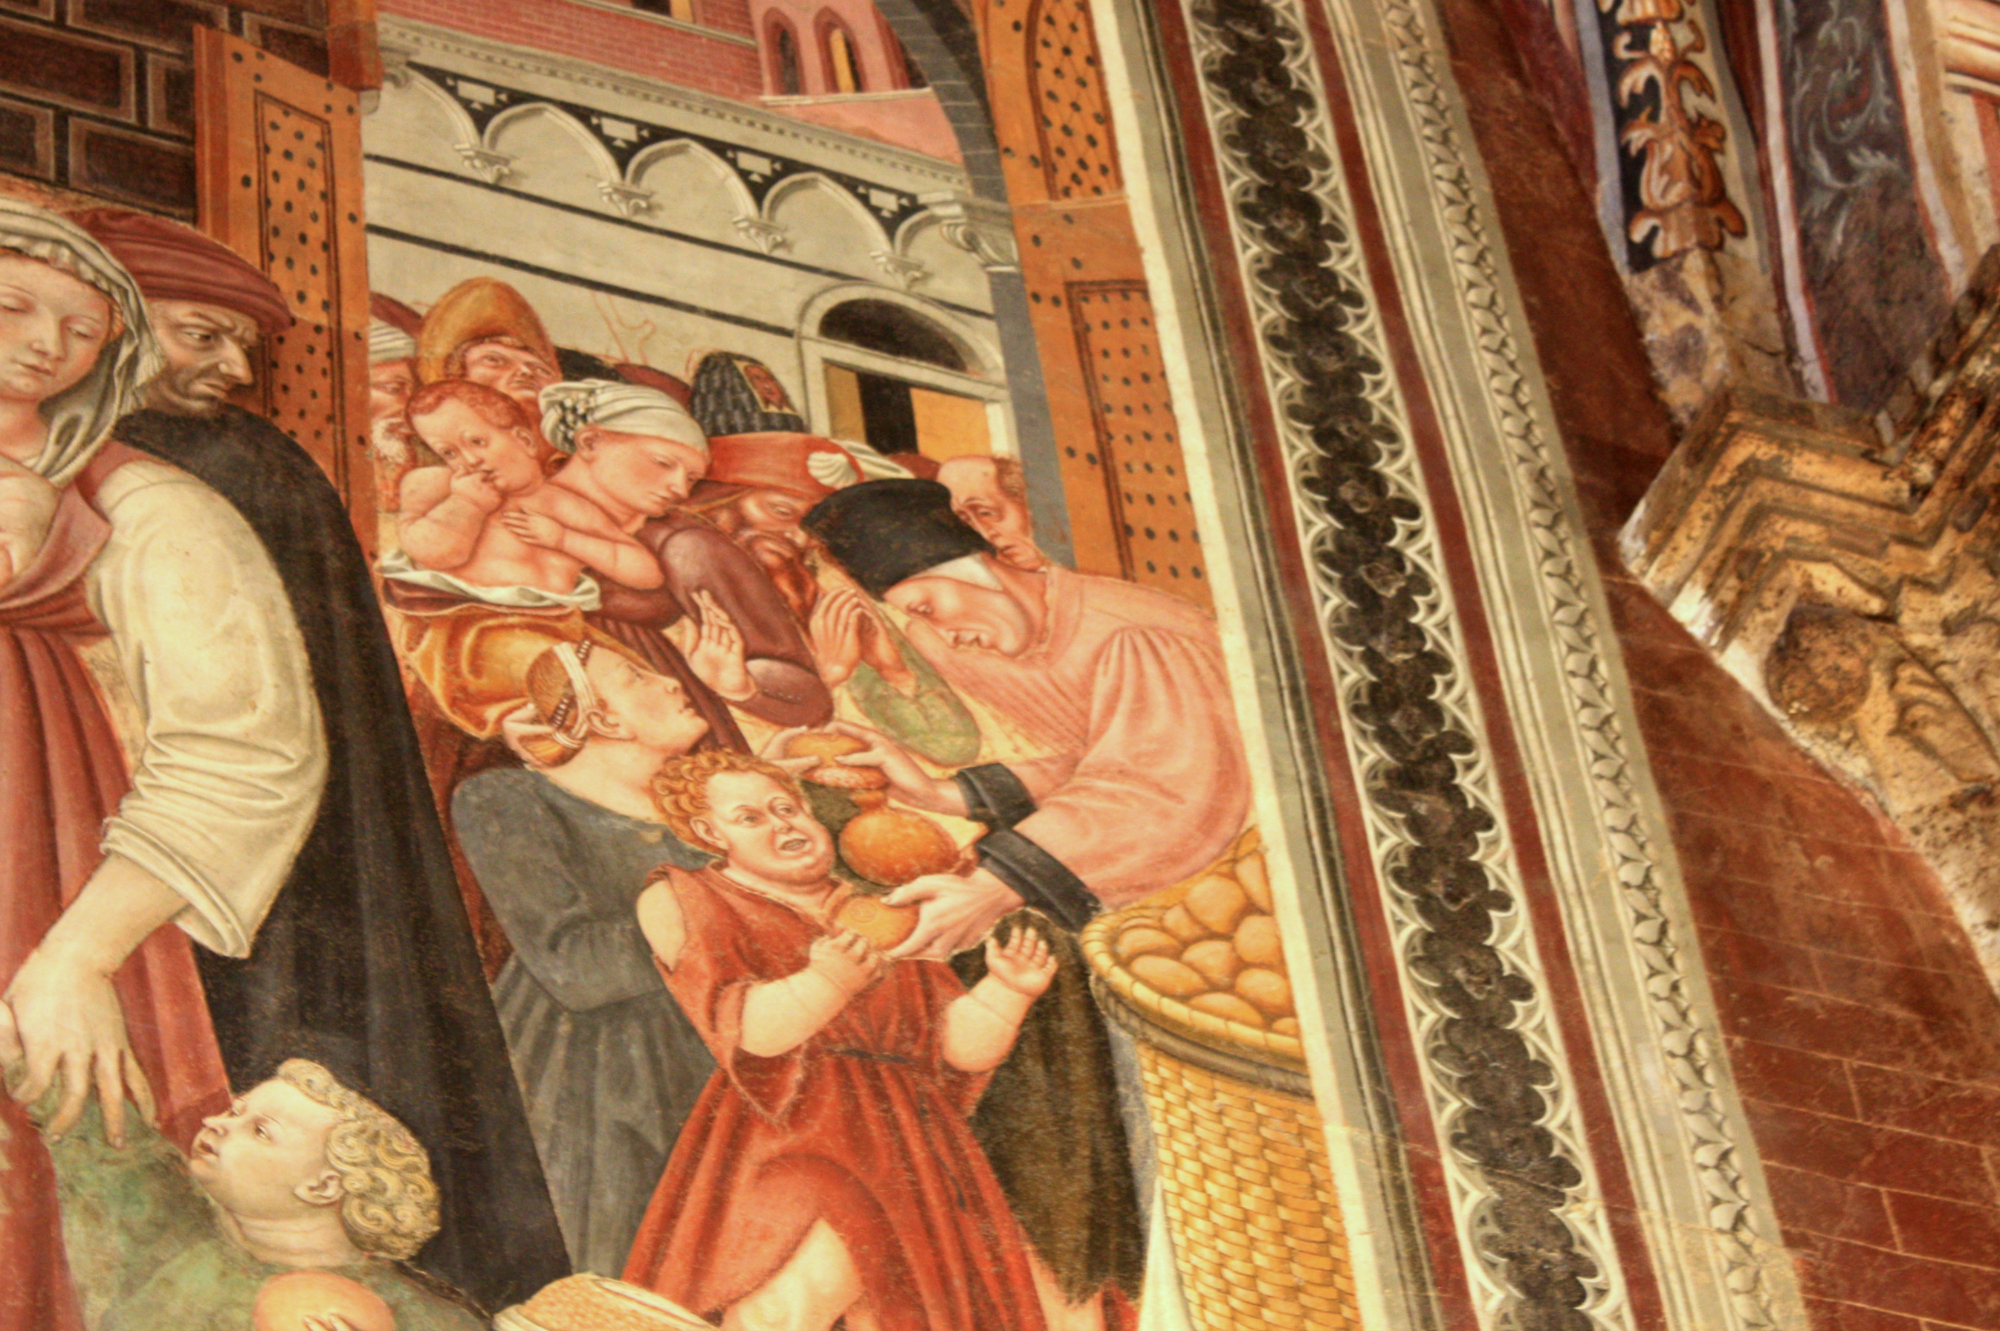 La distribution de pain aux pauvres peinte dans la Salle des Pèlerins